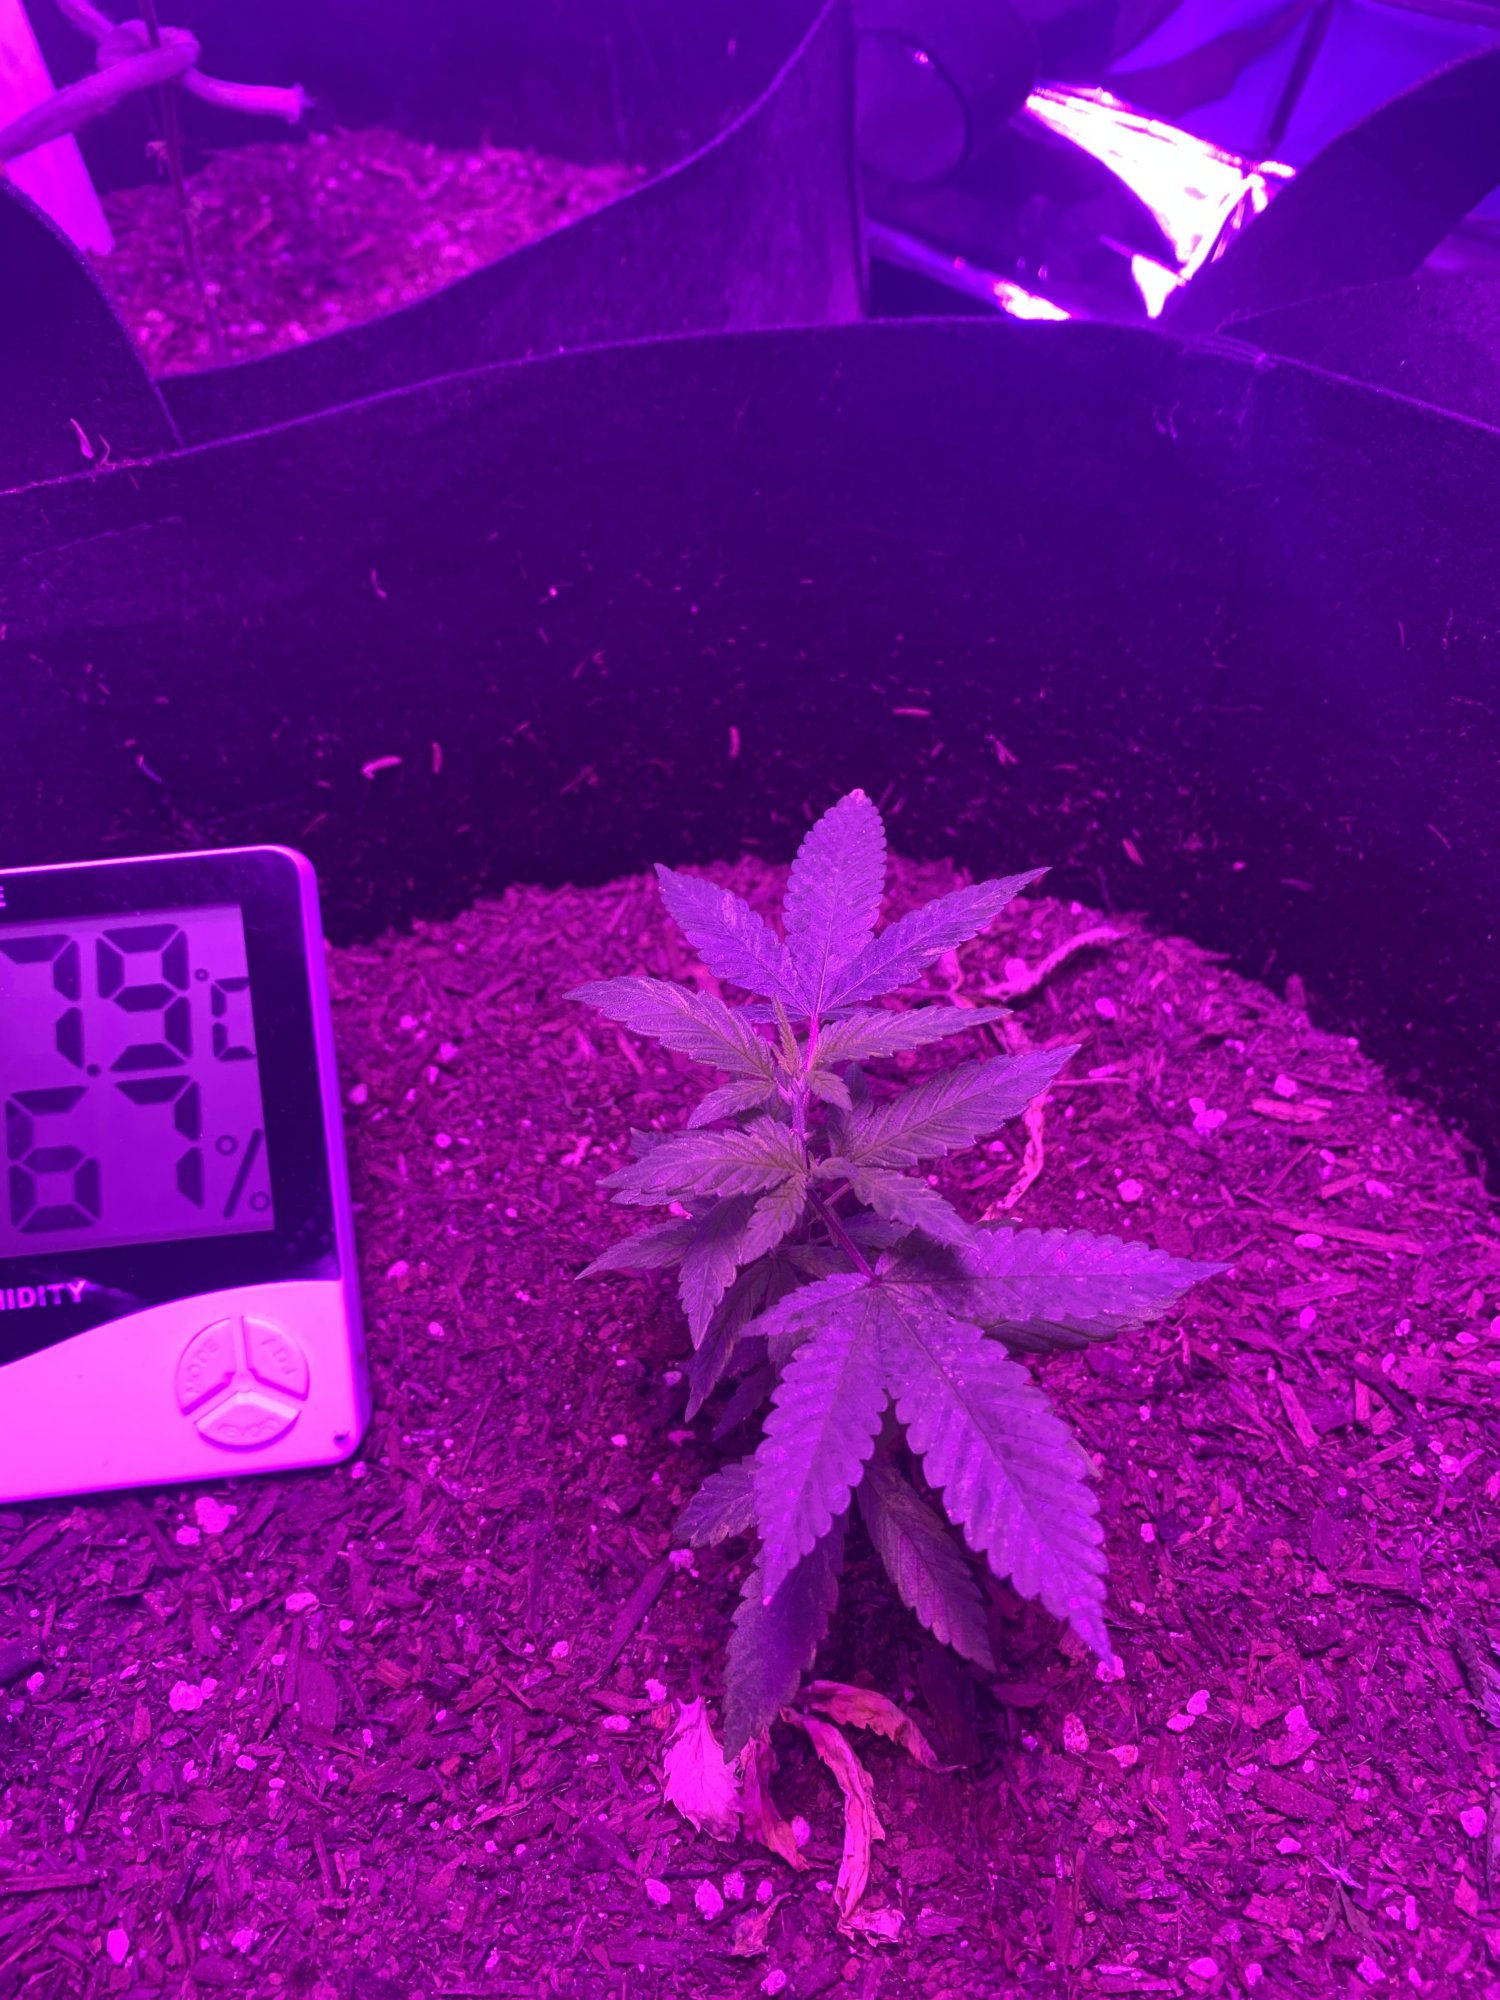 First indoor grow  looking good so far 2